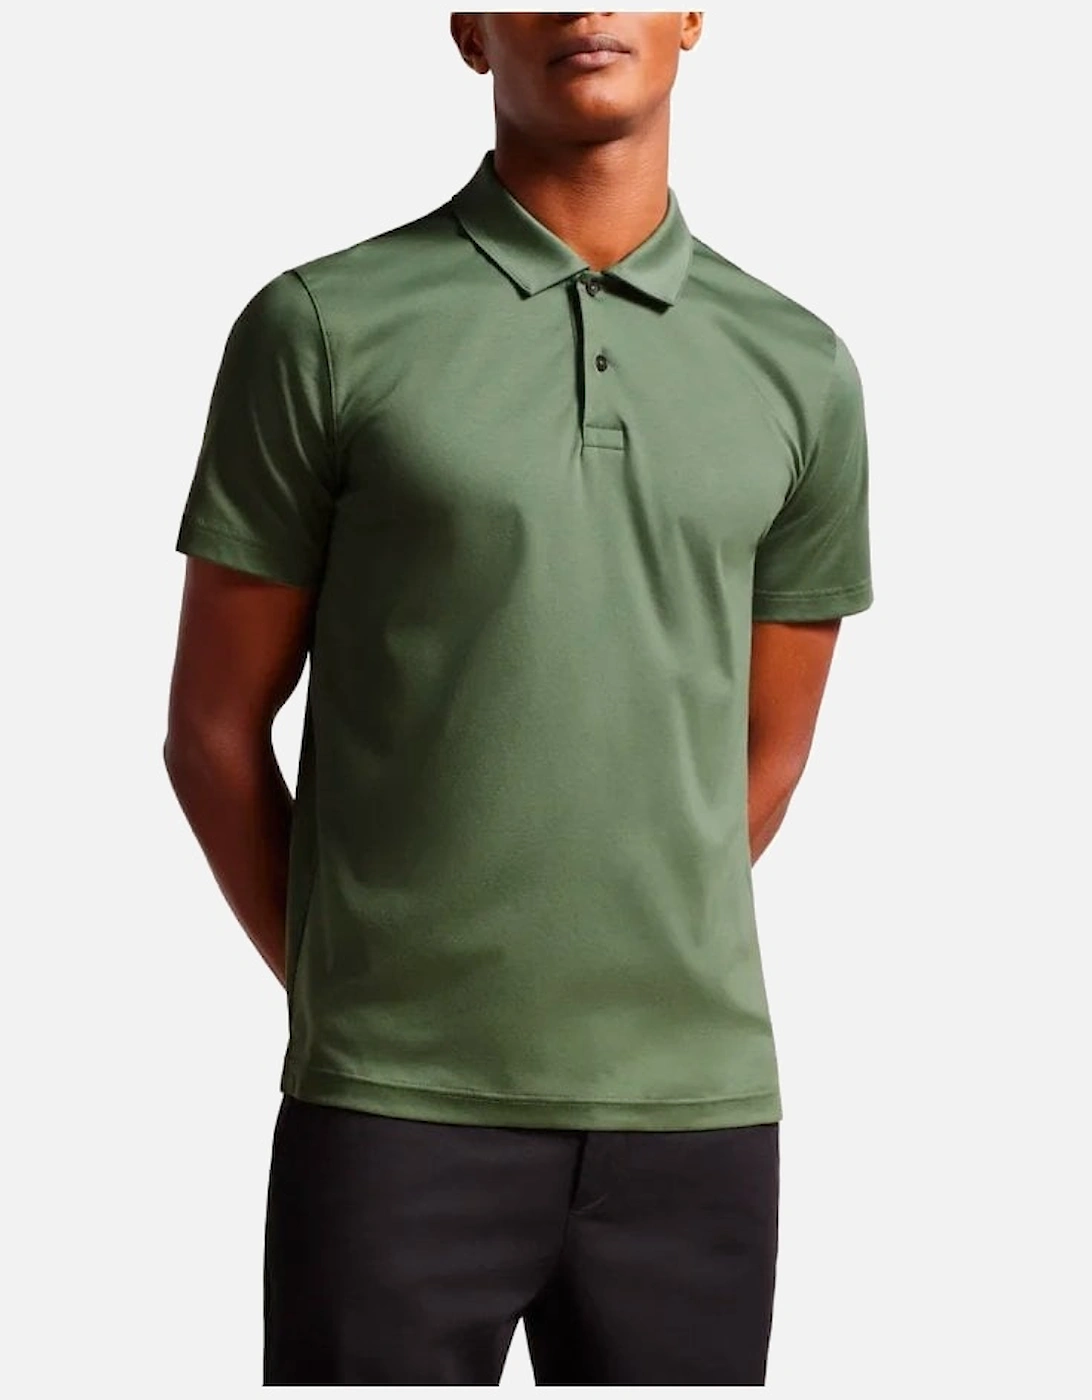 Zeiter Soft Touch Polo Shirt Khaki, 6 of 5